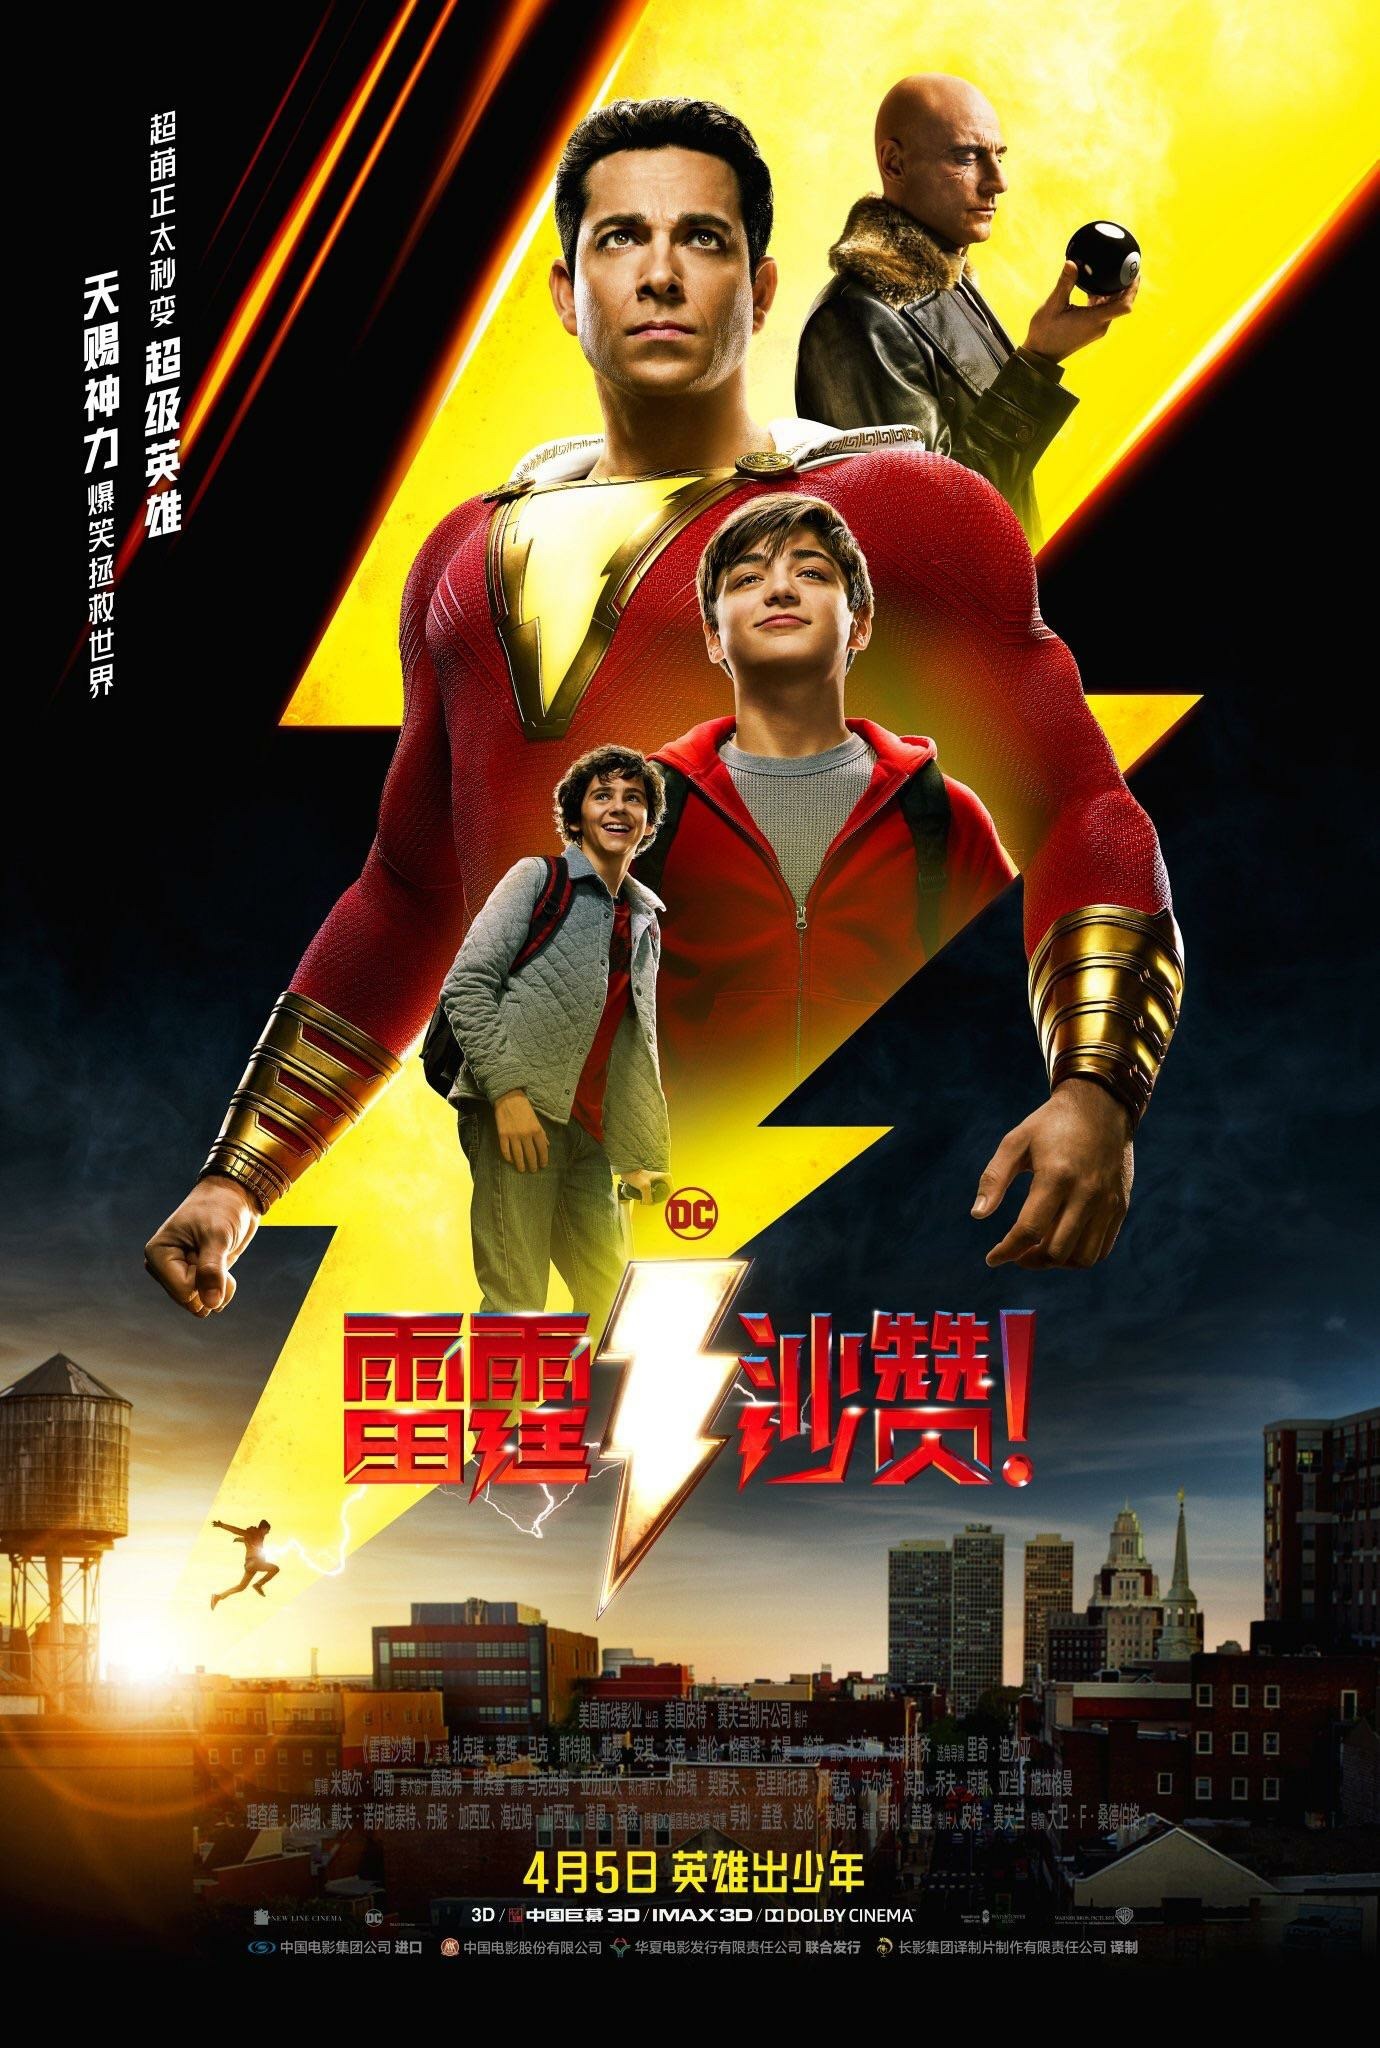 Mega Sized Movie Poster Image for Shazam! (#5 of 10)